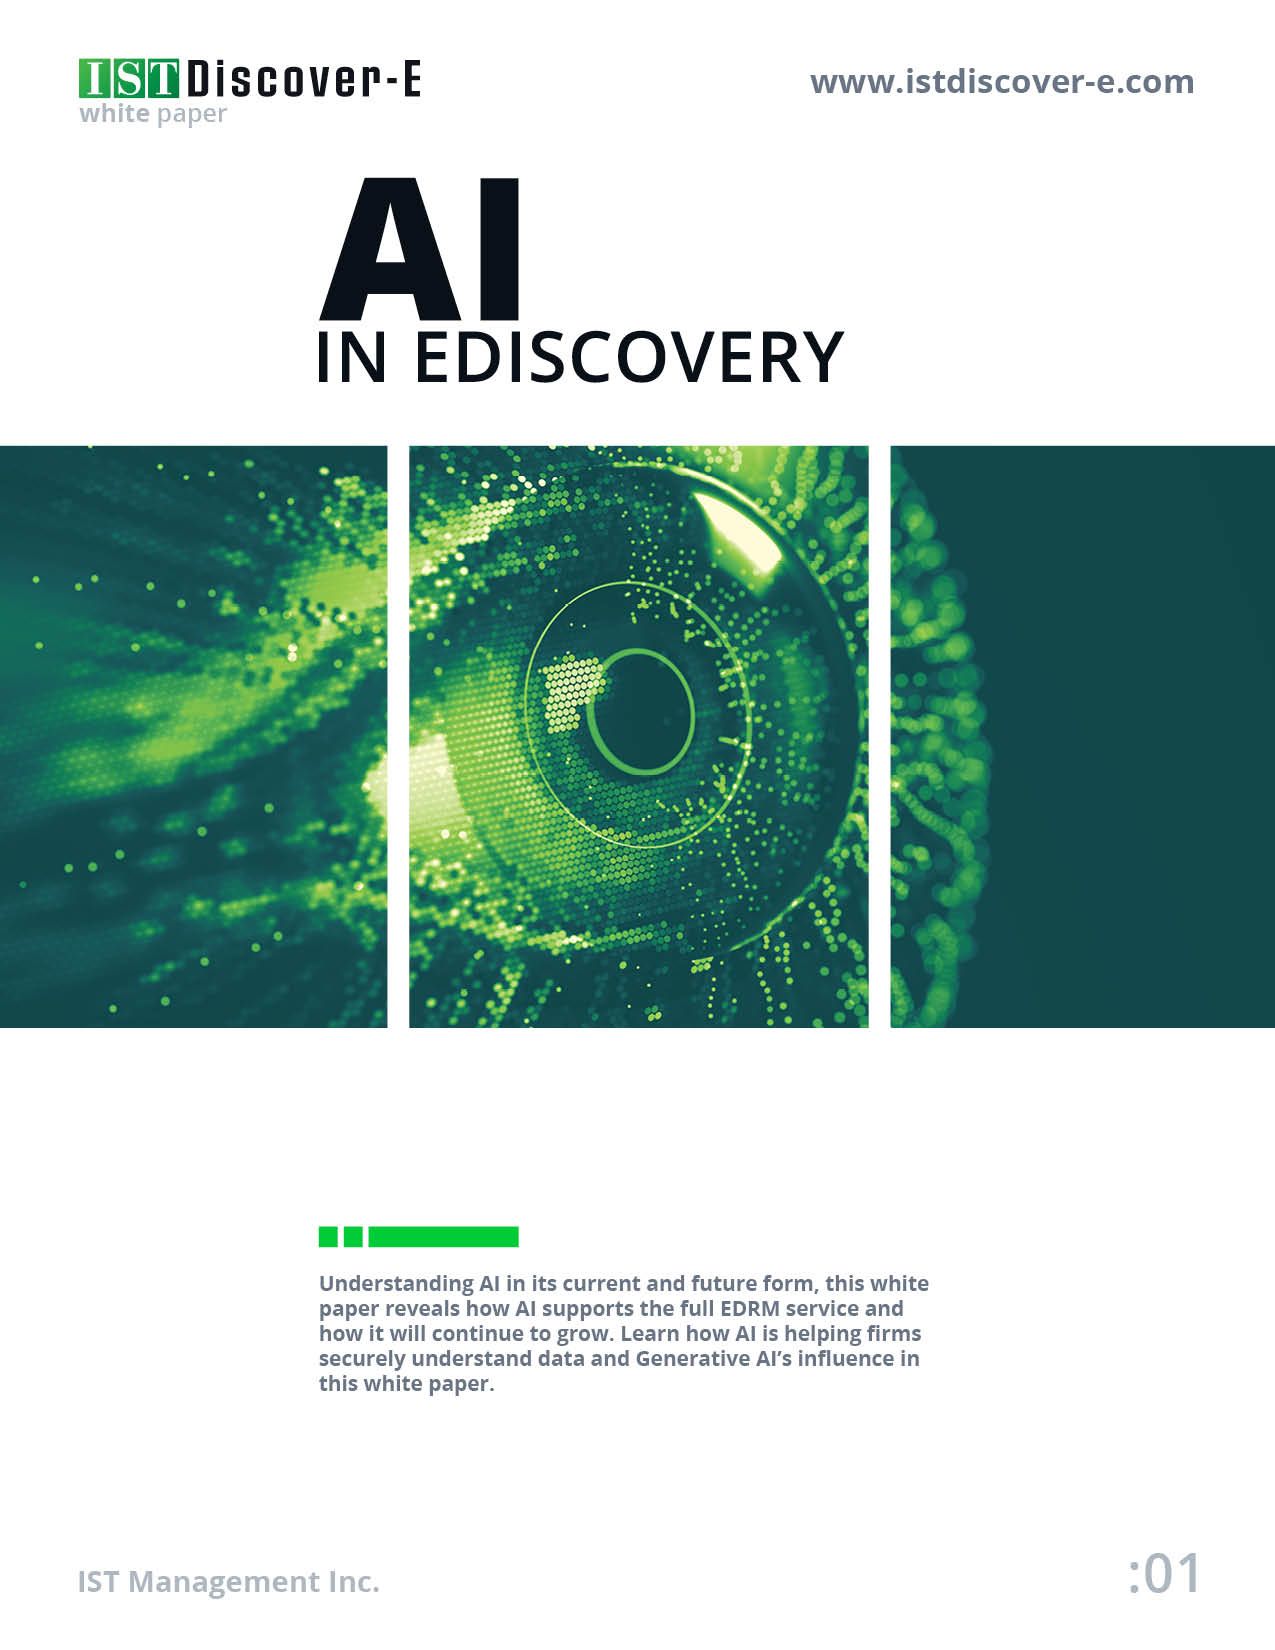 IST Discover-E White Paper Cover Image